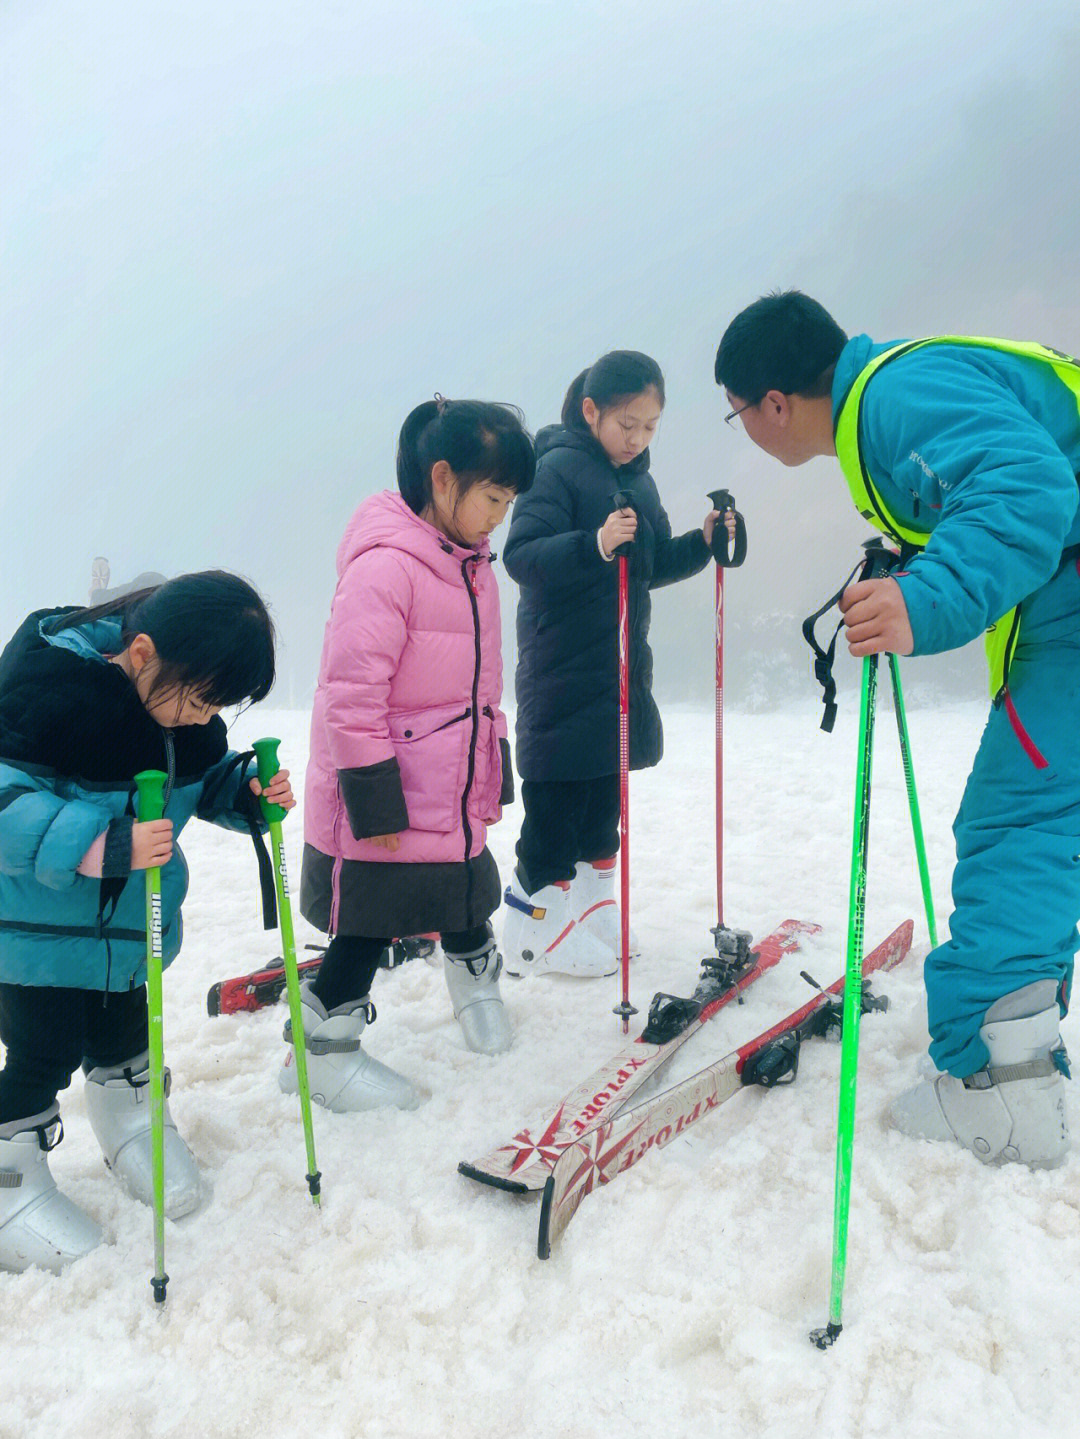 马上就要开学啦赶紧周边溜一圈去了武义千丈岩滑雪场对初学小朋友来说